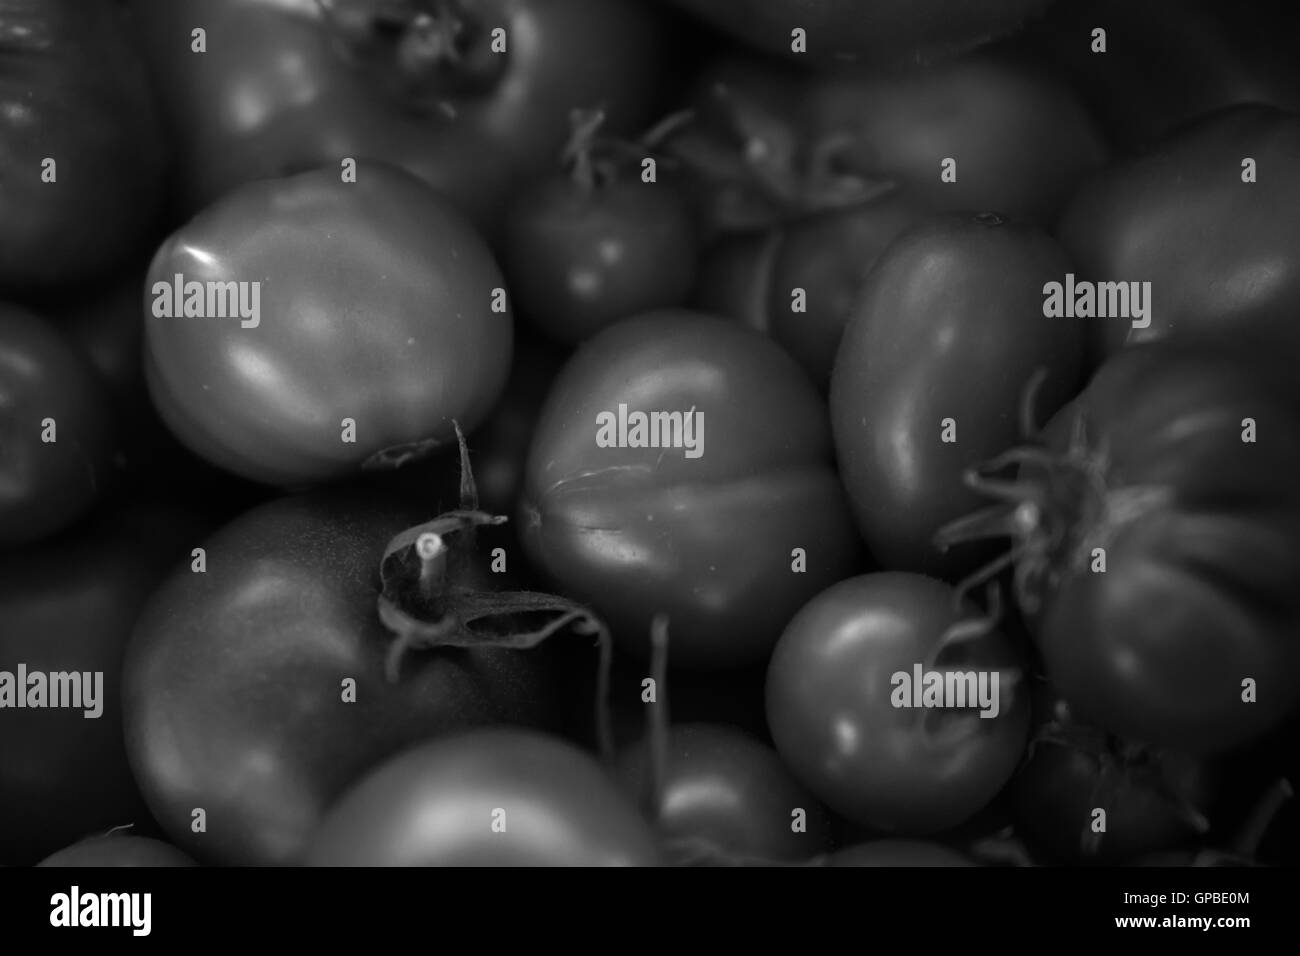 tomato tomatoes Stock Photo